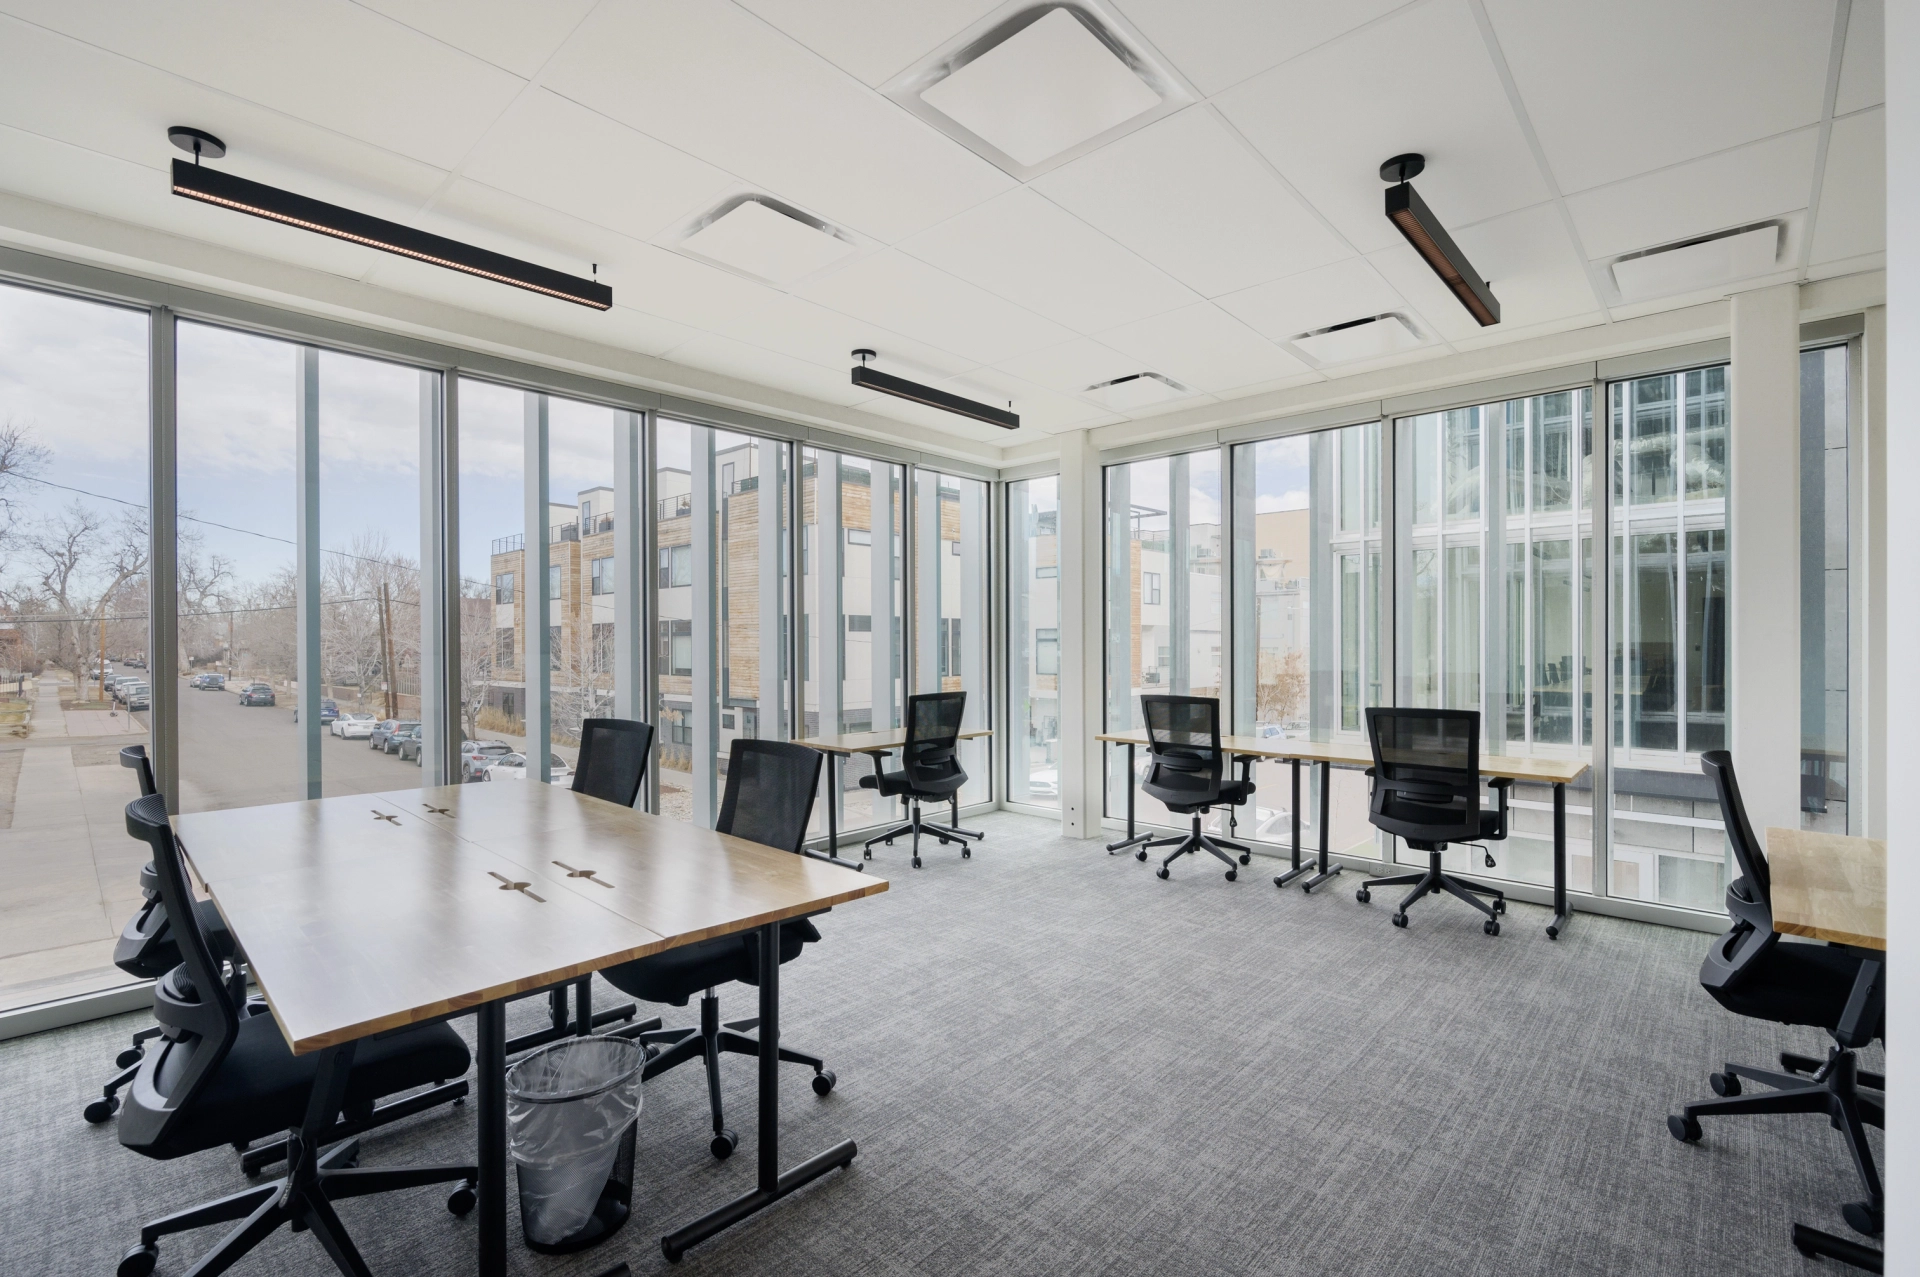 Une salle de conférence Denver avec de grandes fenêtres et des chaises, parfaite pour un coworking ou un espace de travail.